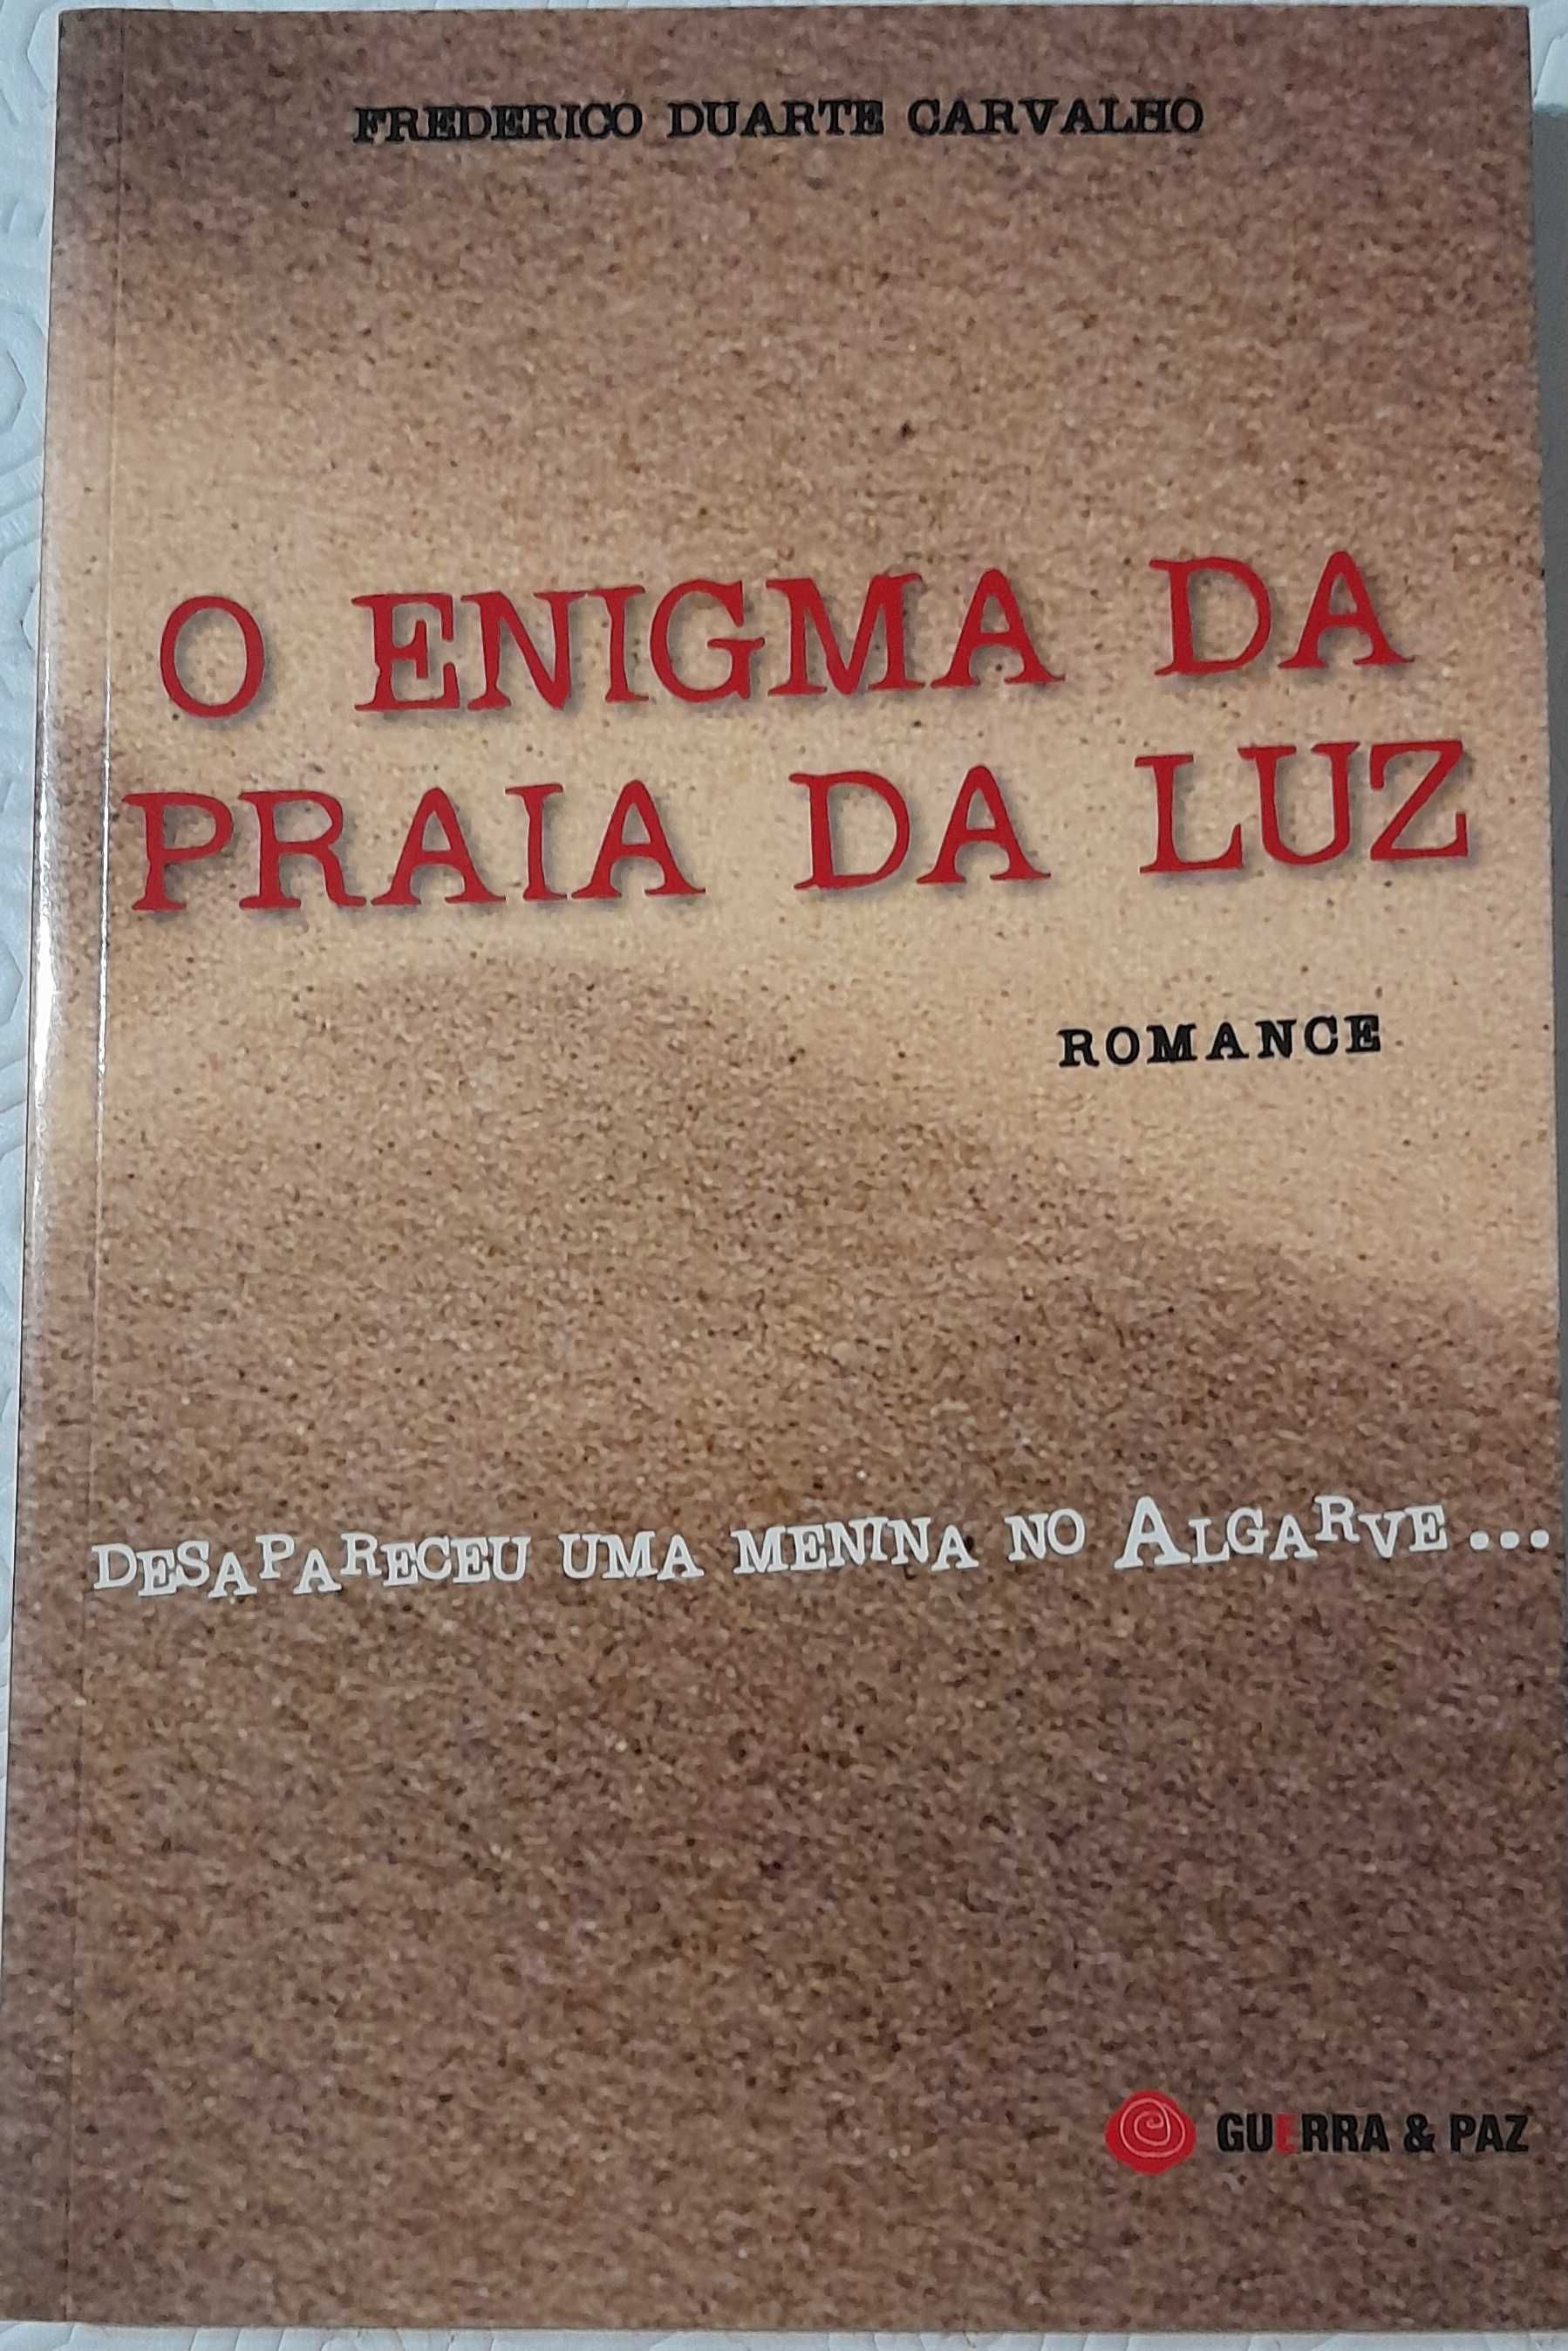 Livro O Enigma da Praia da Luz de Frederico Duarte Carvalho